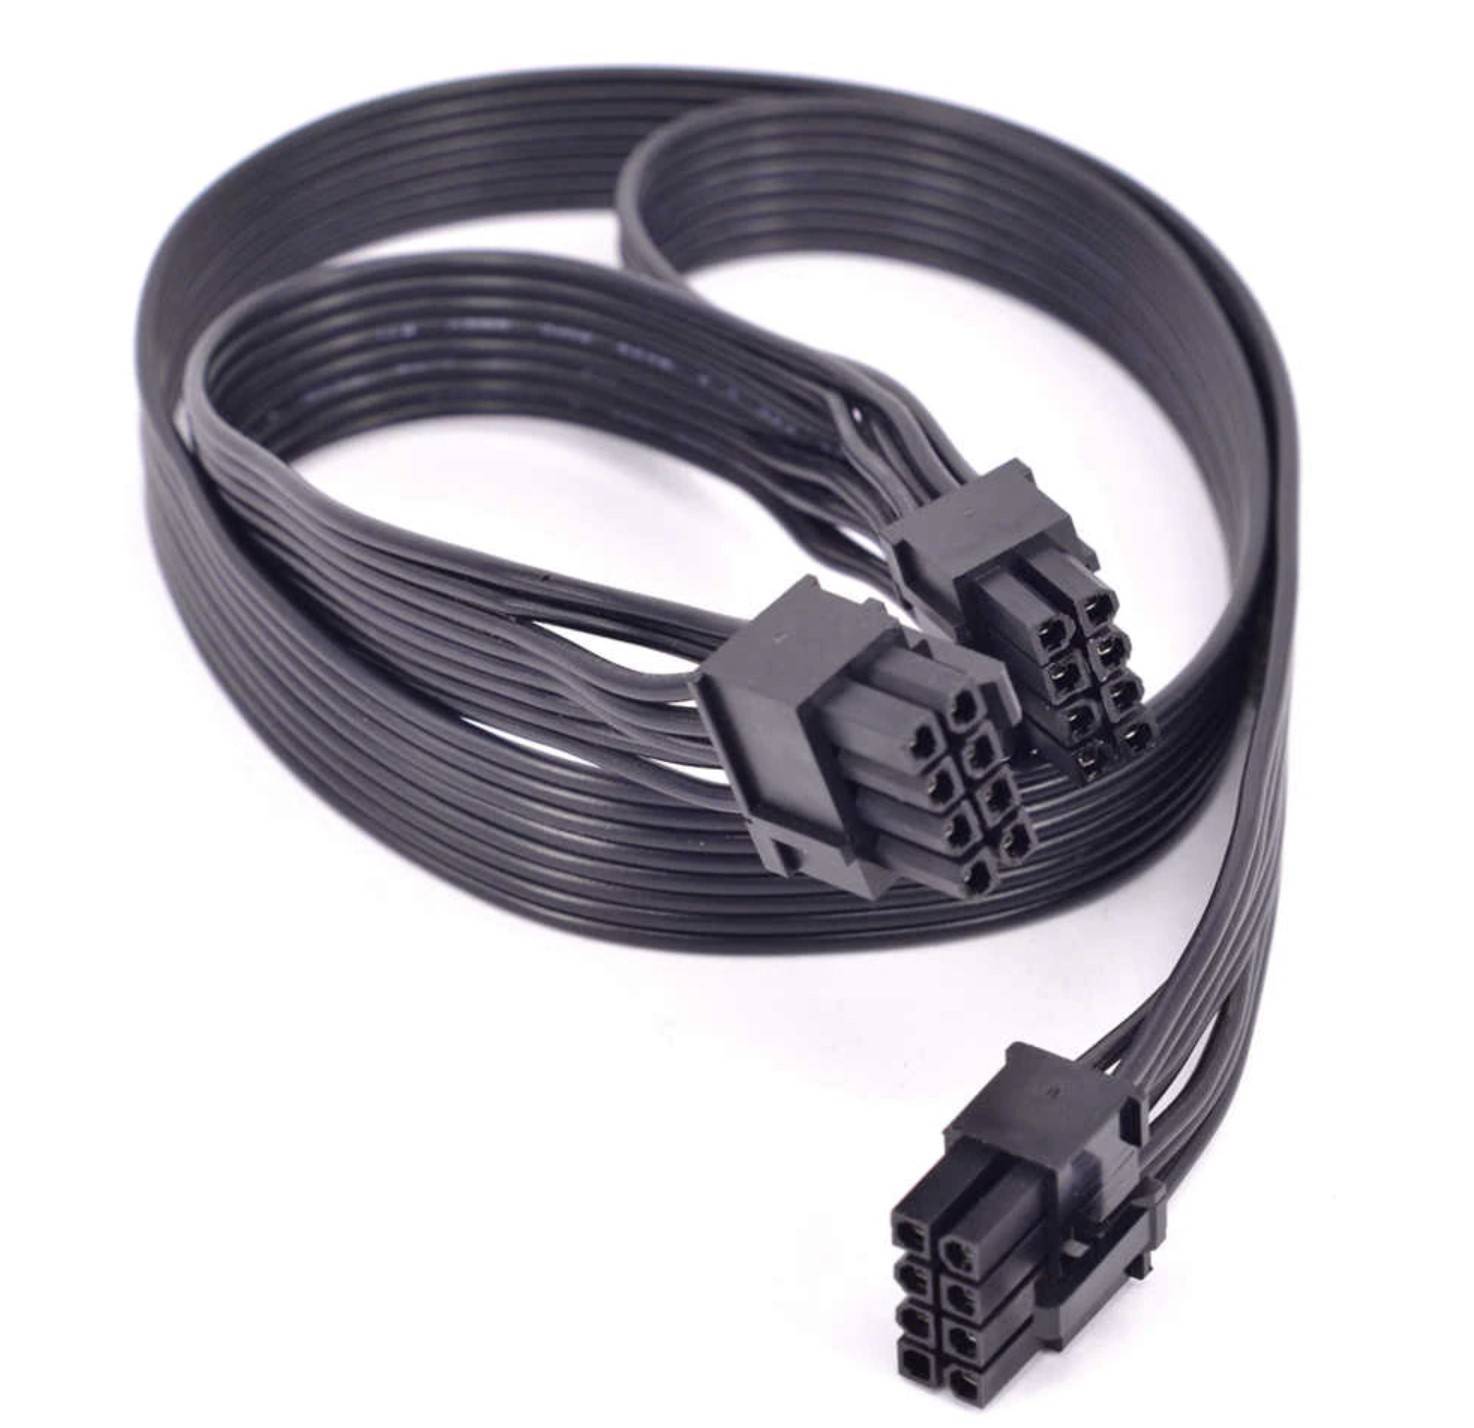 cables-para-fuente-de-poder-modular-corsair-originales-en-quito-mejor-precio-idkmanager3.jpg